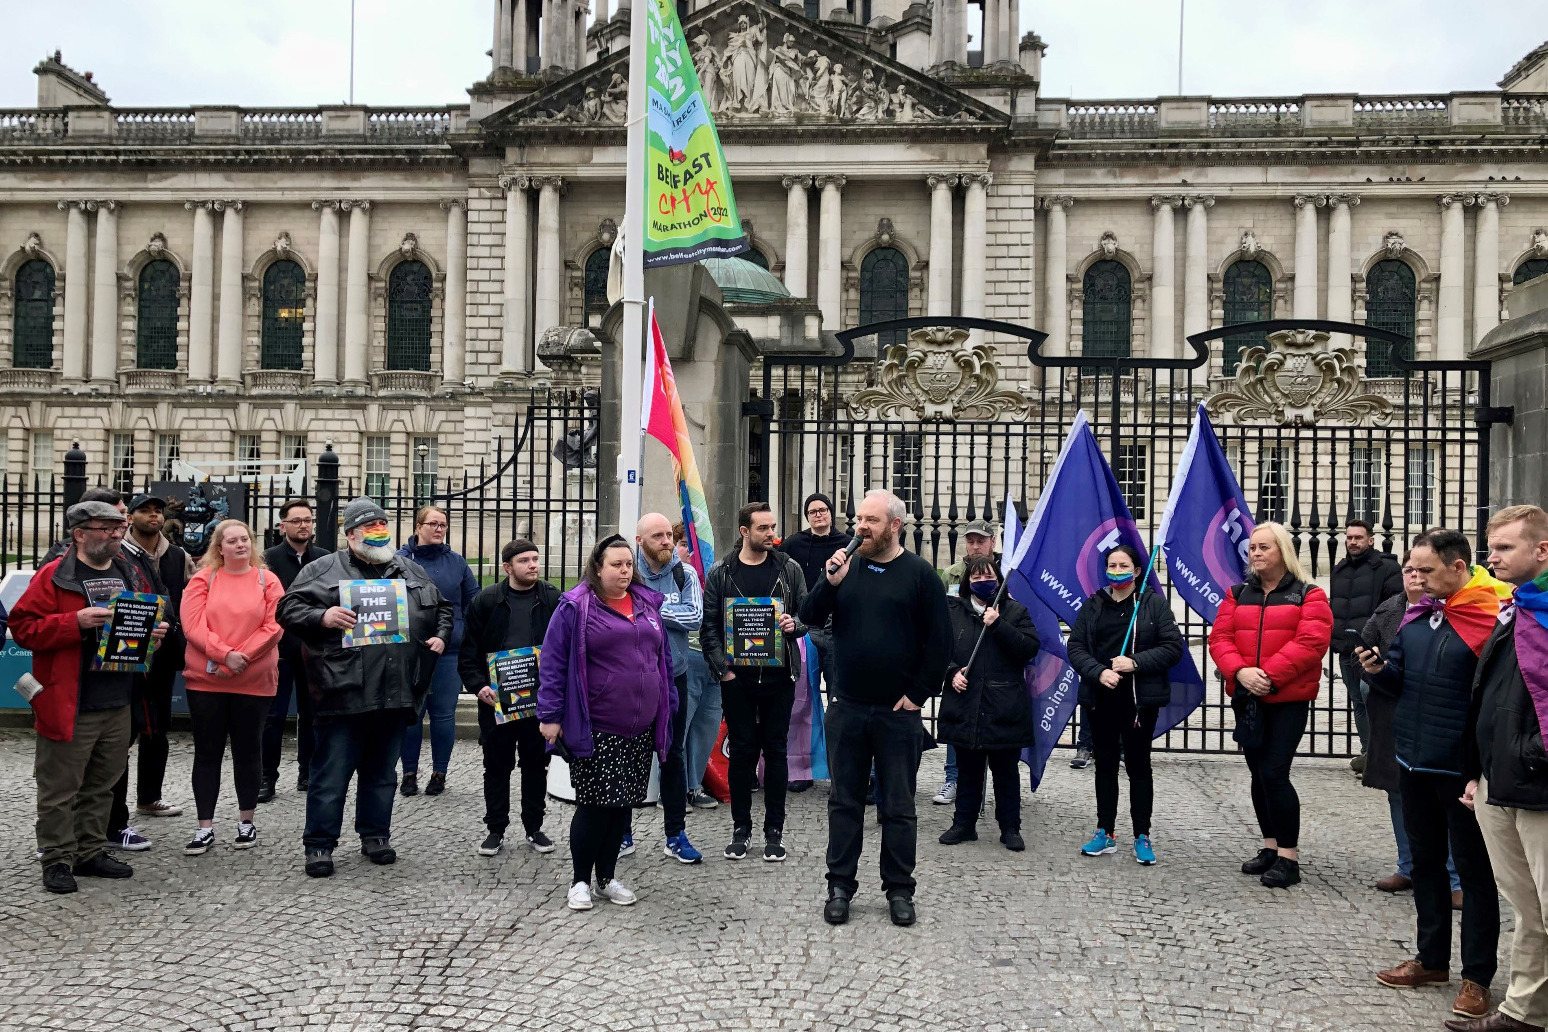 Vigils have been held in Ireland for two men found dead in Sligo 